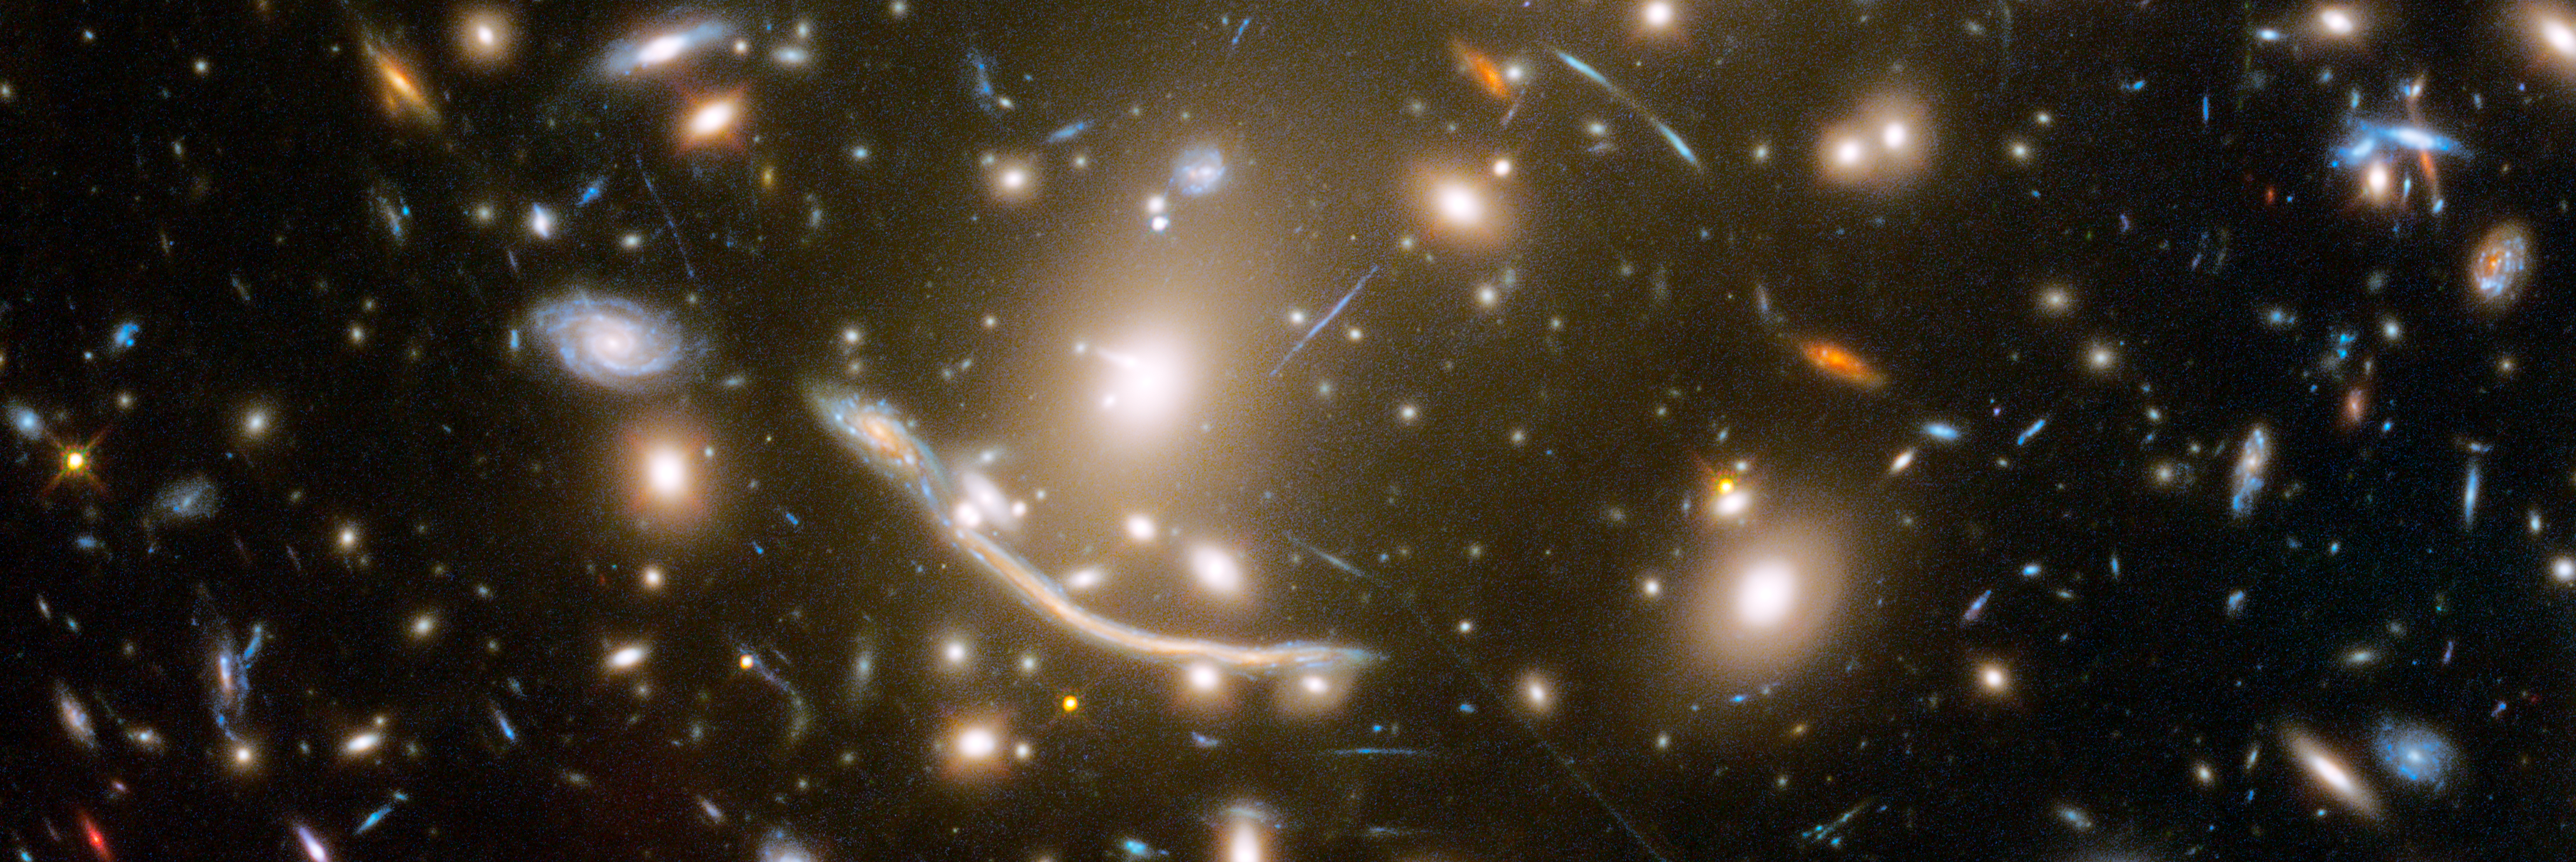 Foto del cúmulo de galaxias Abell 370 tomada por el Telescopio Espacial Hubble